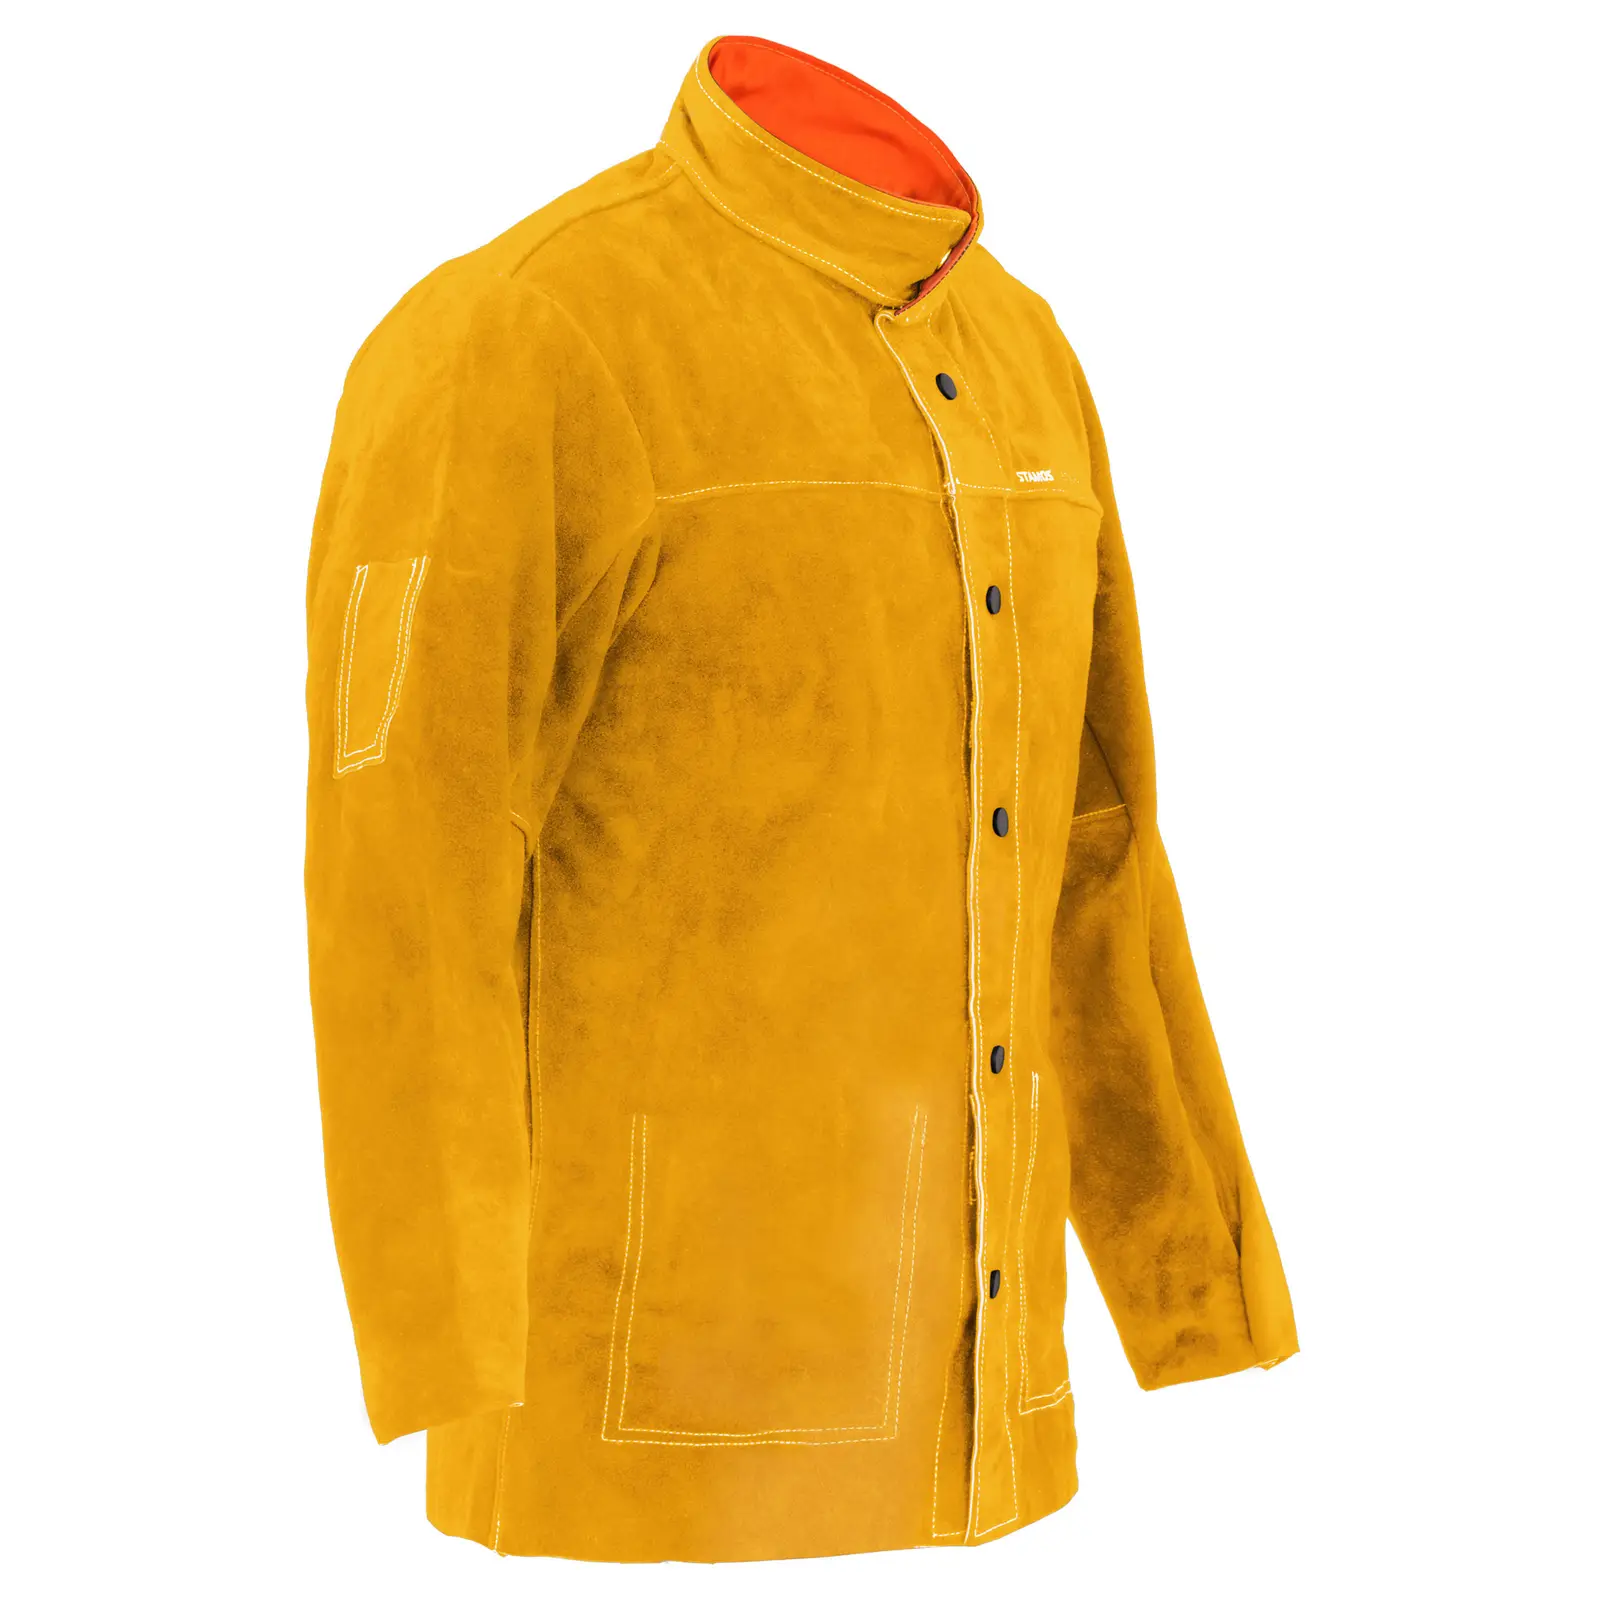 Marhabőr hegesztő kabát - arany - XL-es méret